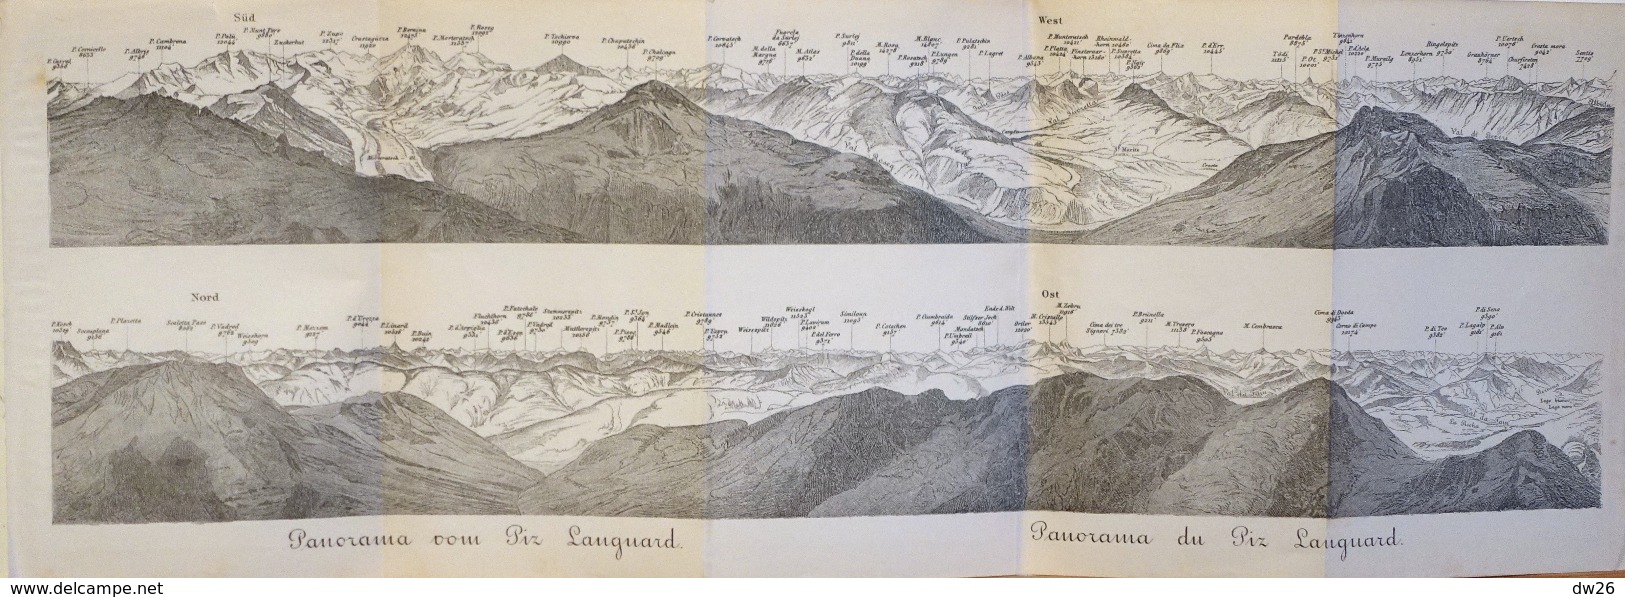 Carte Géographique: Panorama Baedeker 1907 - Panorama Vom Du Piz Languard (Suisse, Grisons) - Cartes Géographiques